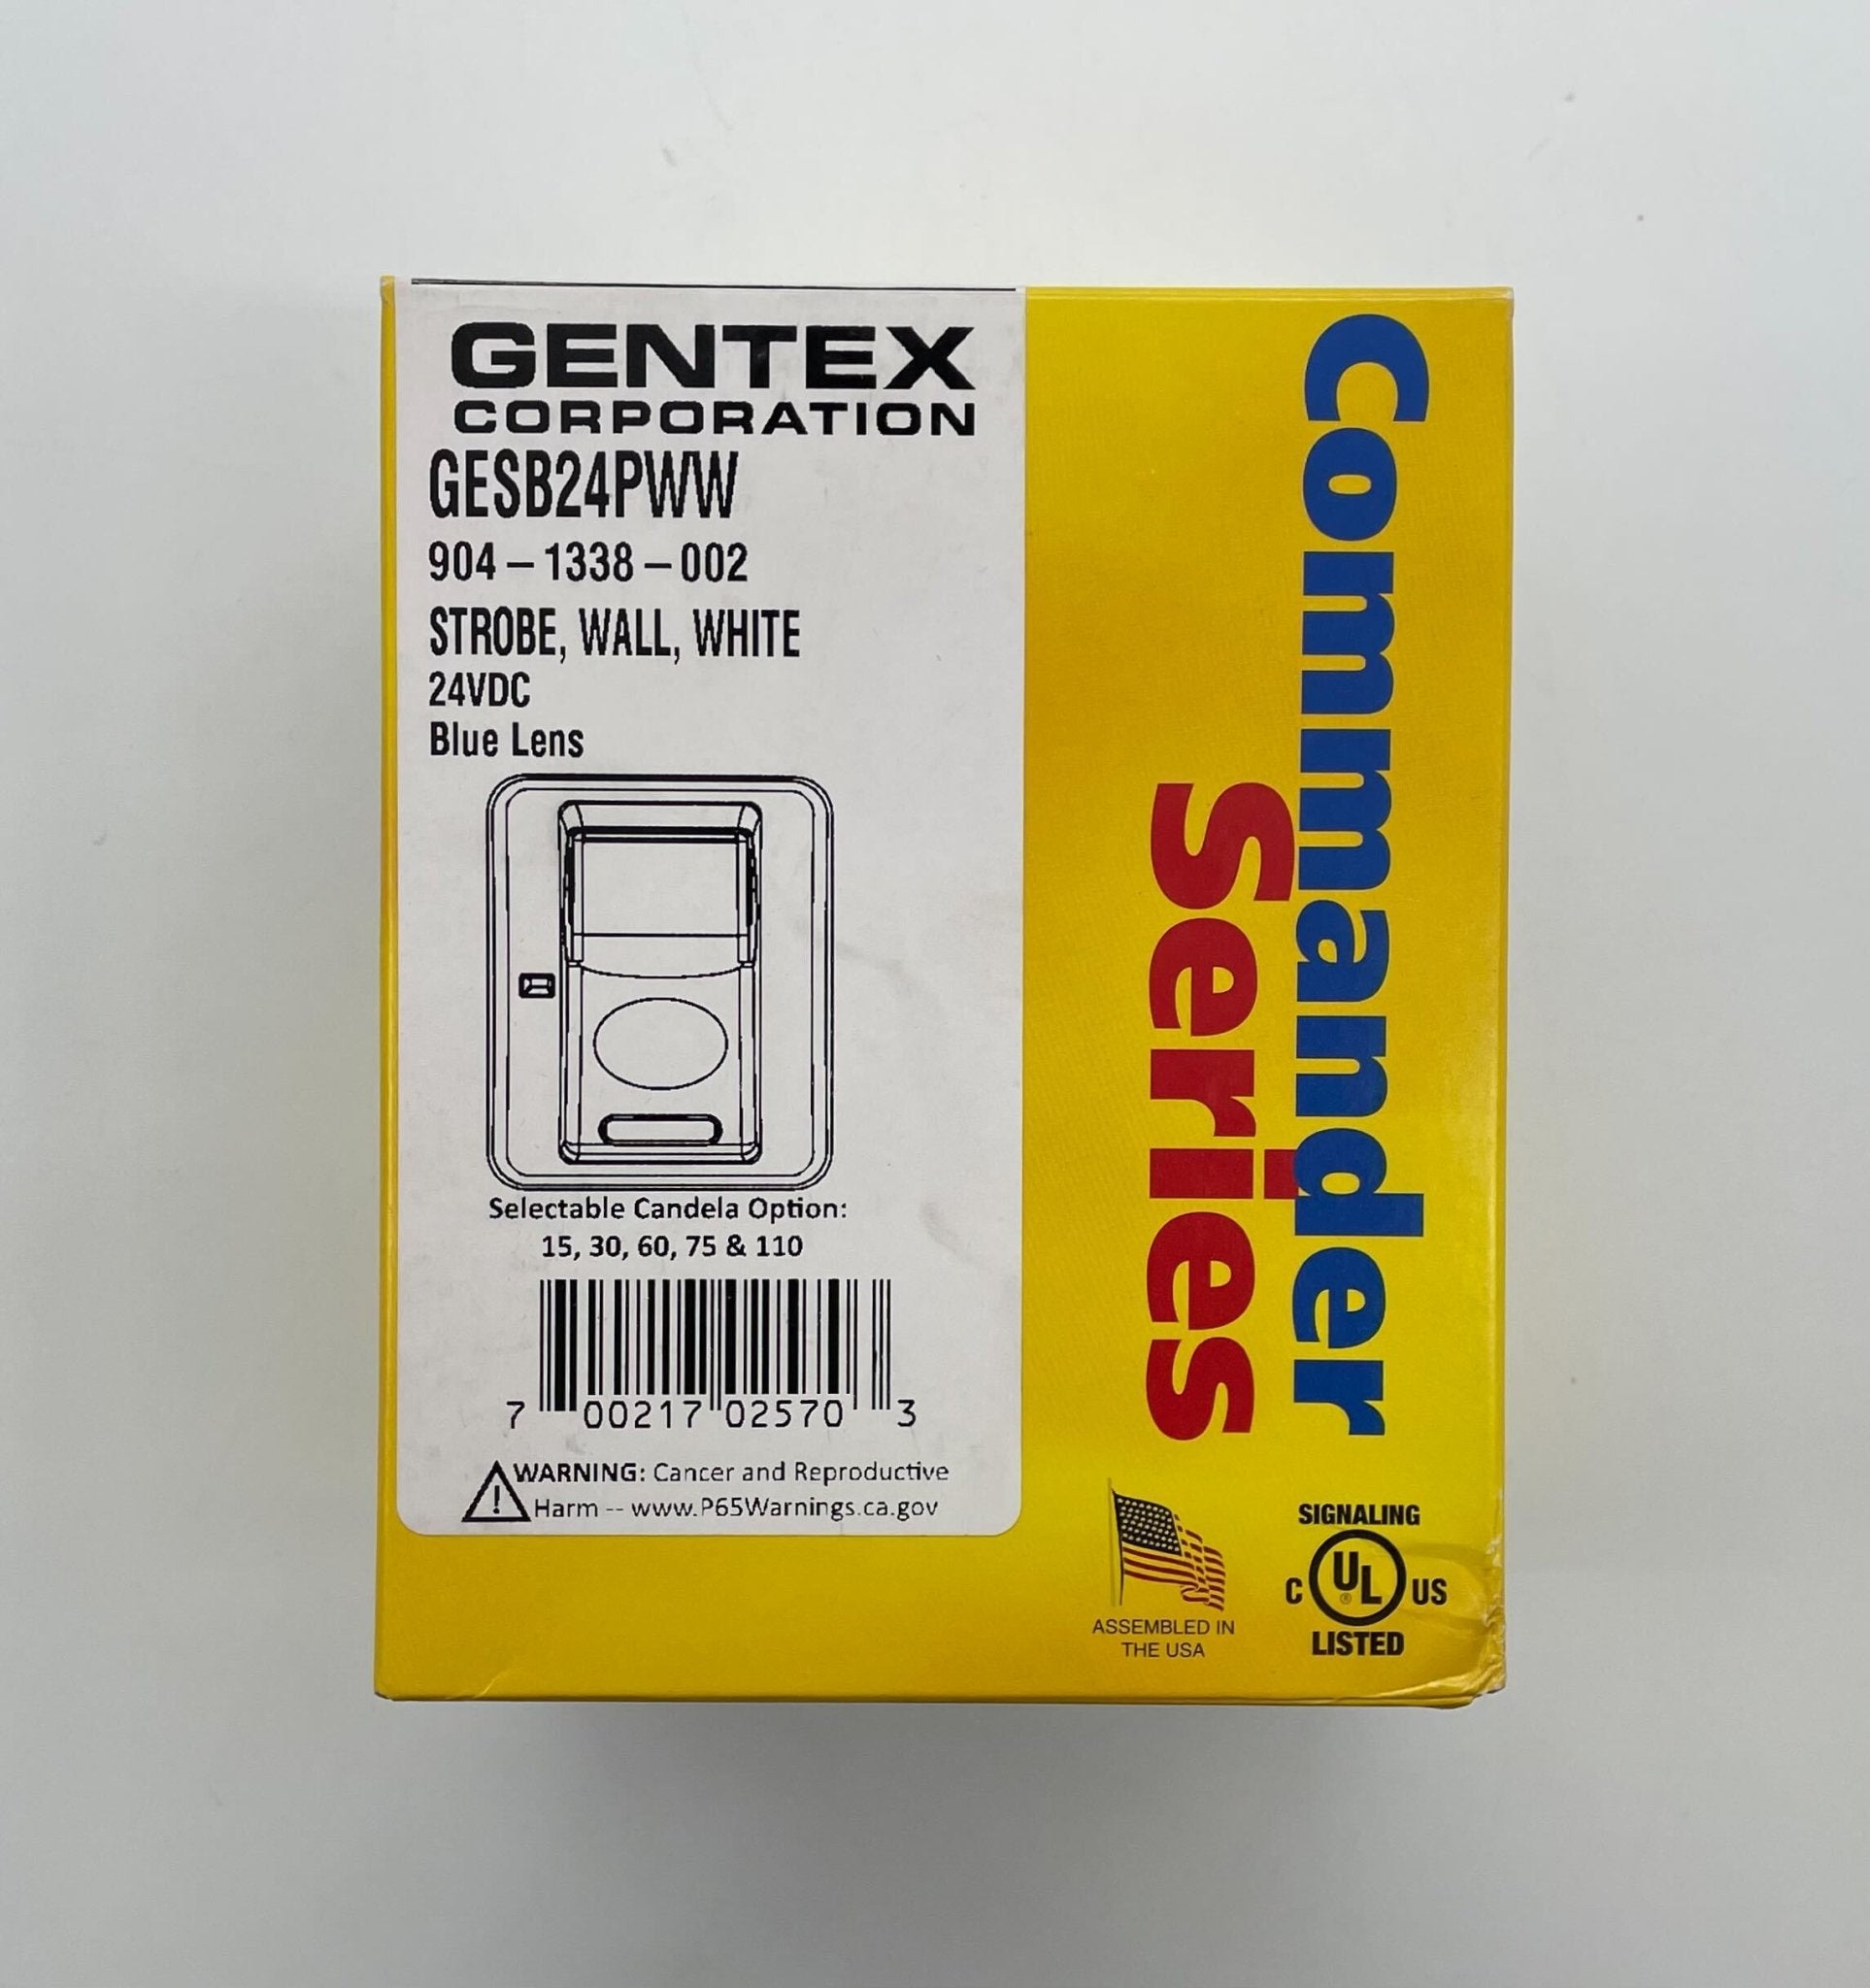 Gentex GESB24PWW - The Fire Alarm Supplier